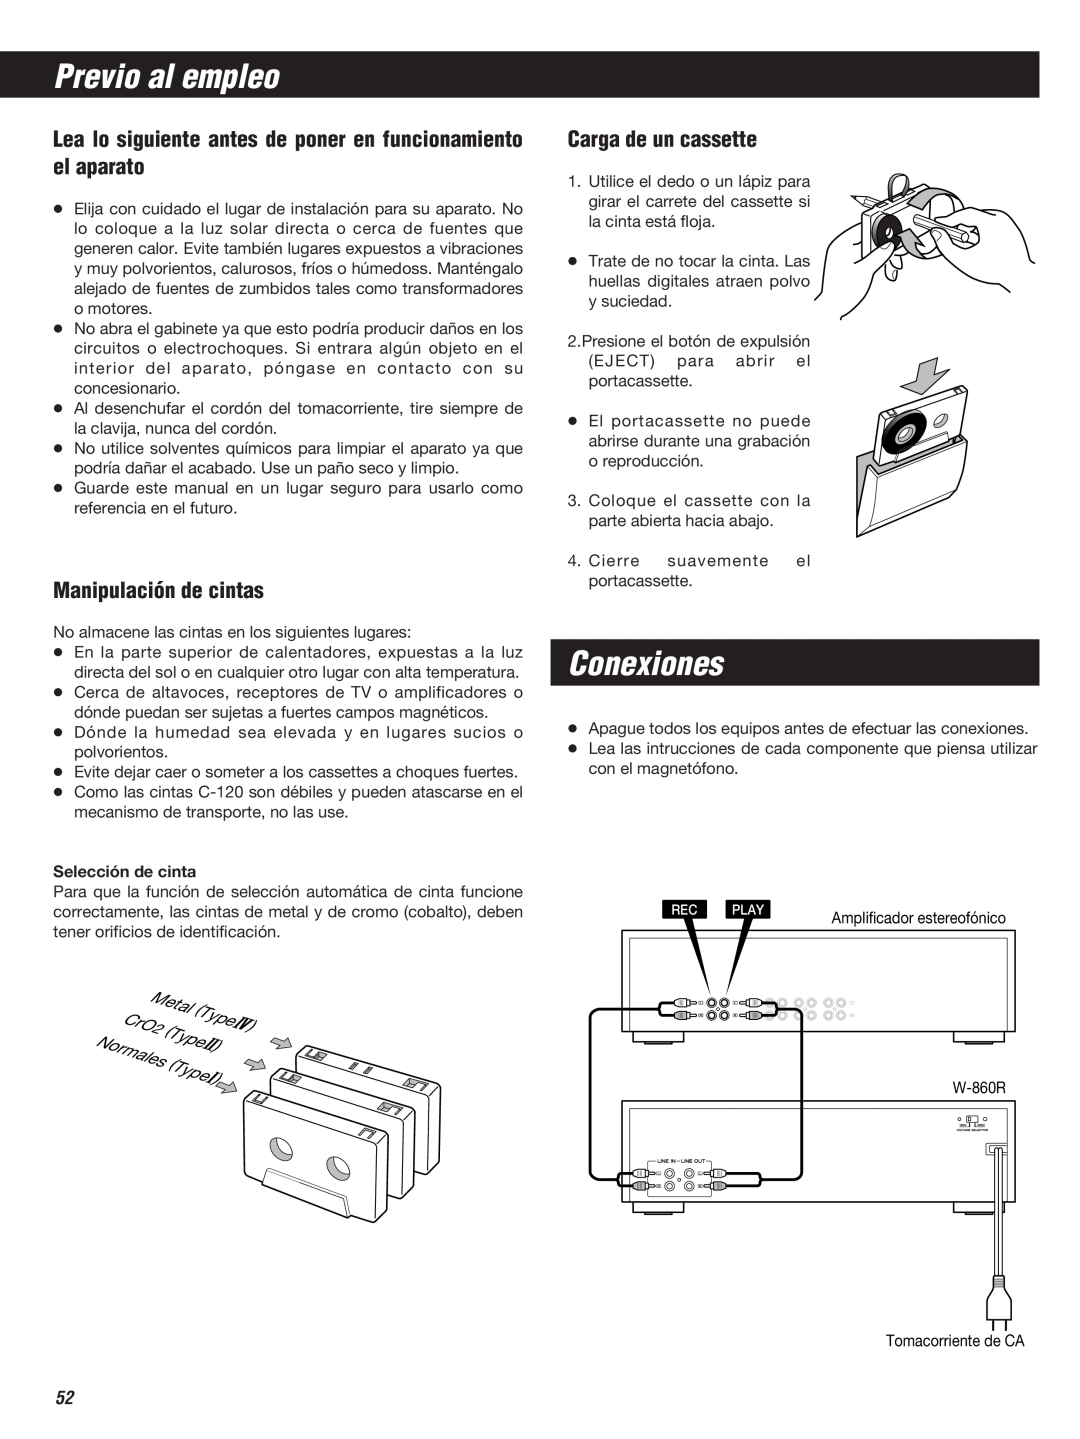 Teac W-860R owner manual Previo al empleo, Conexiones, Manipulación de cintas, Carga de un cassette 